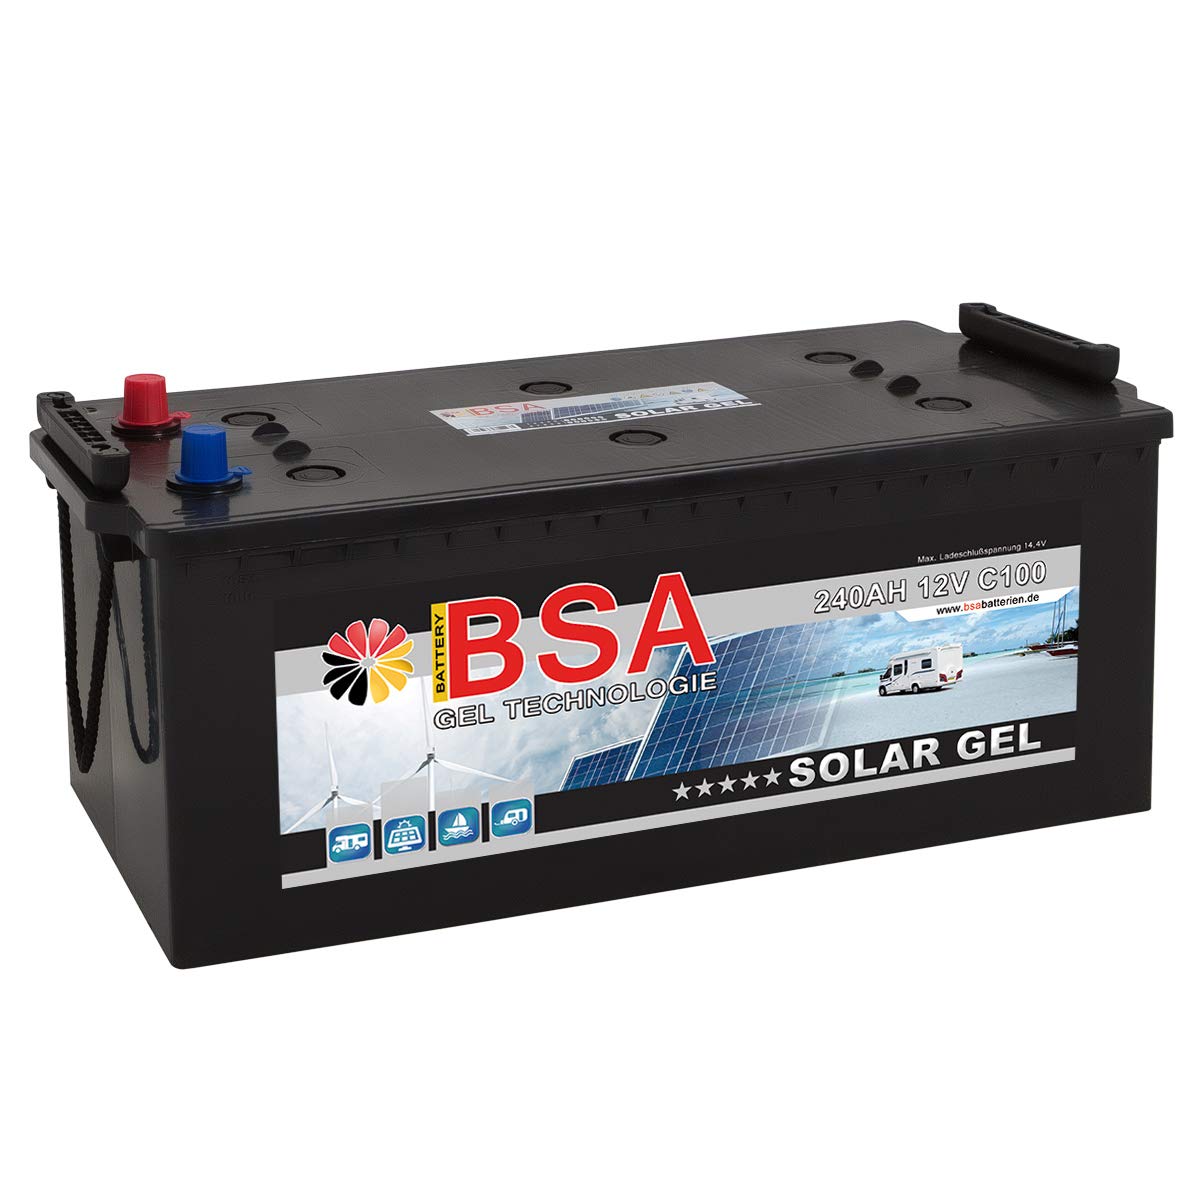 Gel Batterie 240Ah 12V Blei Gel Solarbatterie Wohnmobil Boot Versorgungsbatterie statt 210Ah 220Ah 230ah